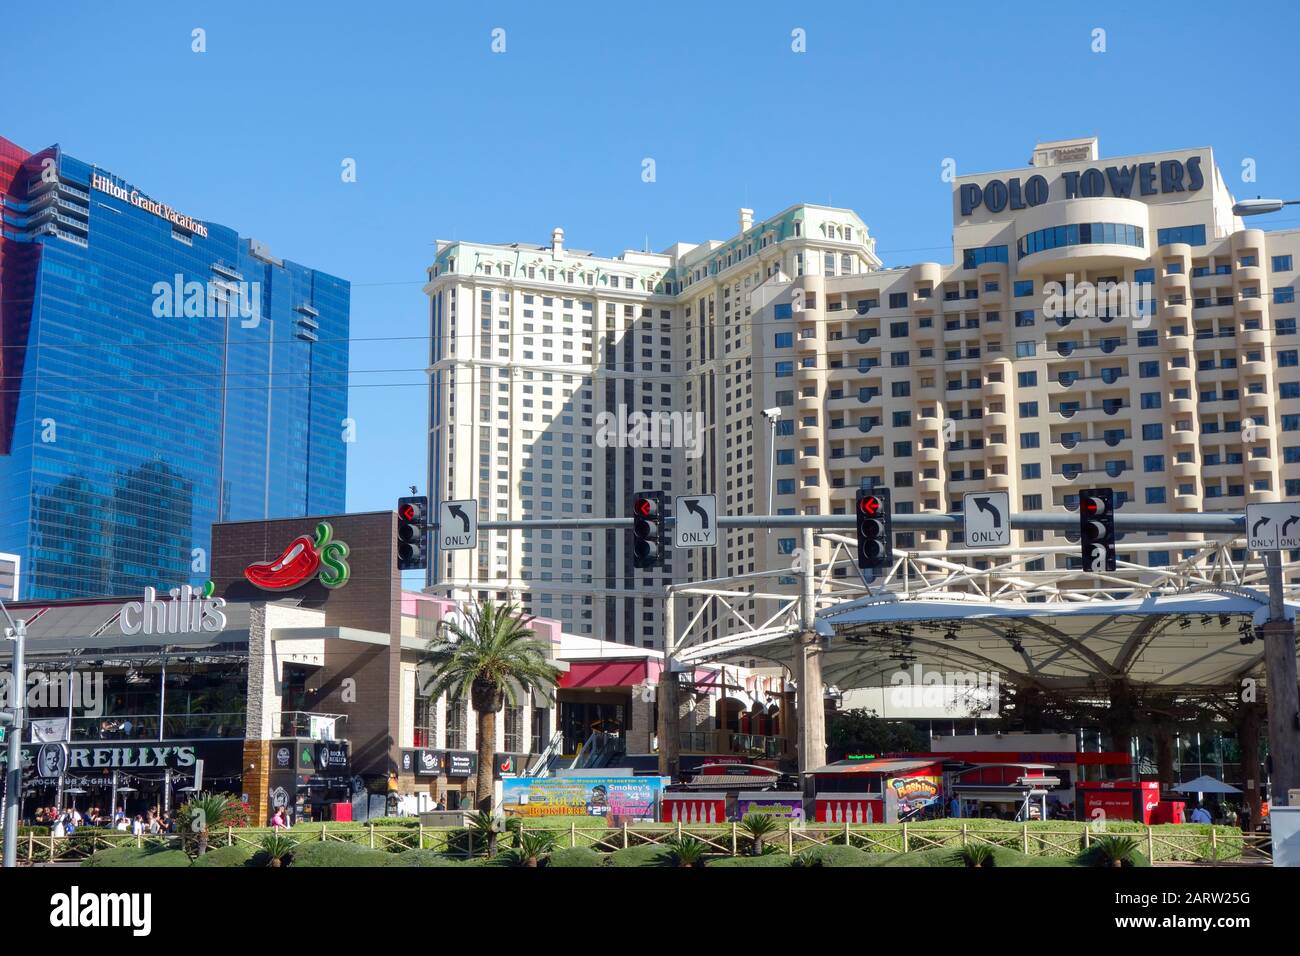 The Polo Towers Resort, Las Vegas, Nevada Stock Photo - Alamy